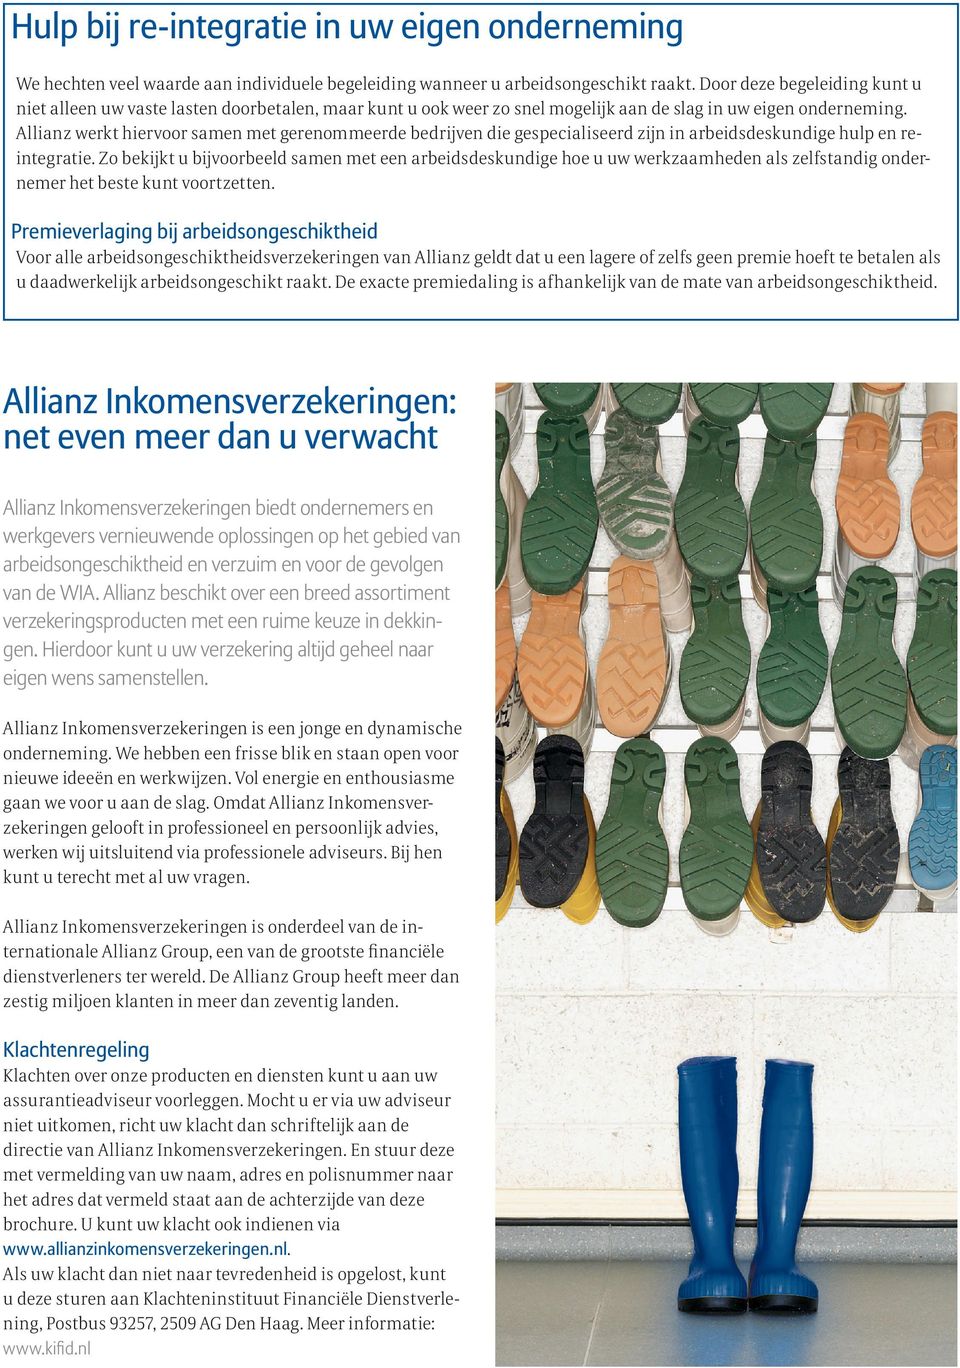 Allianz werkt hiervoor samen met gerenommeerde bedrijven die gespecialiseerd zijn in arbeidsdeskundige hulp en reintegratie.